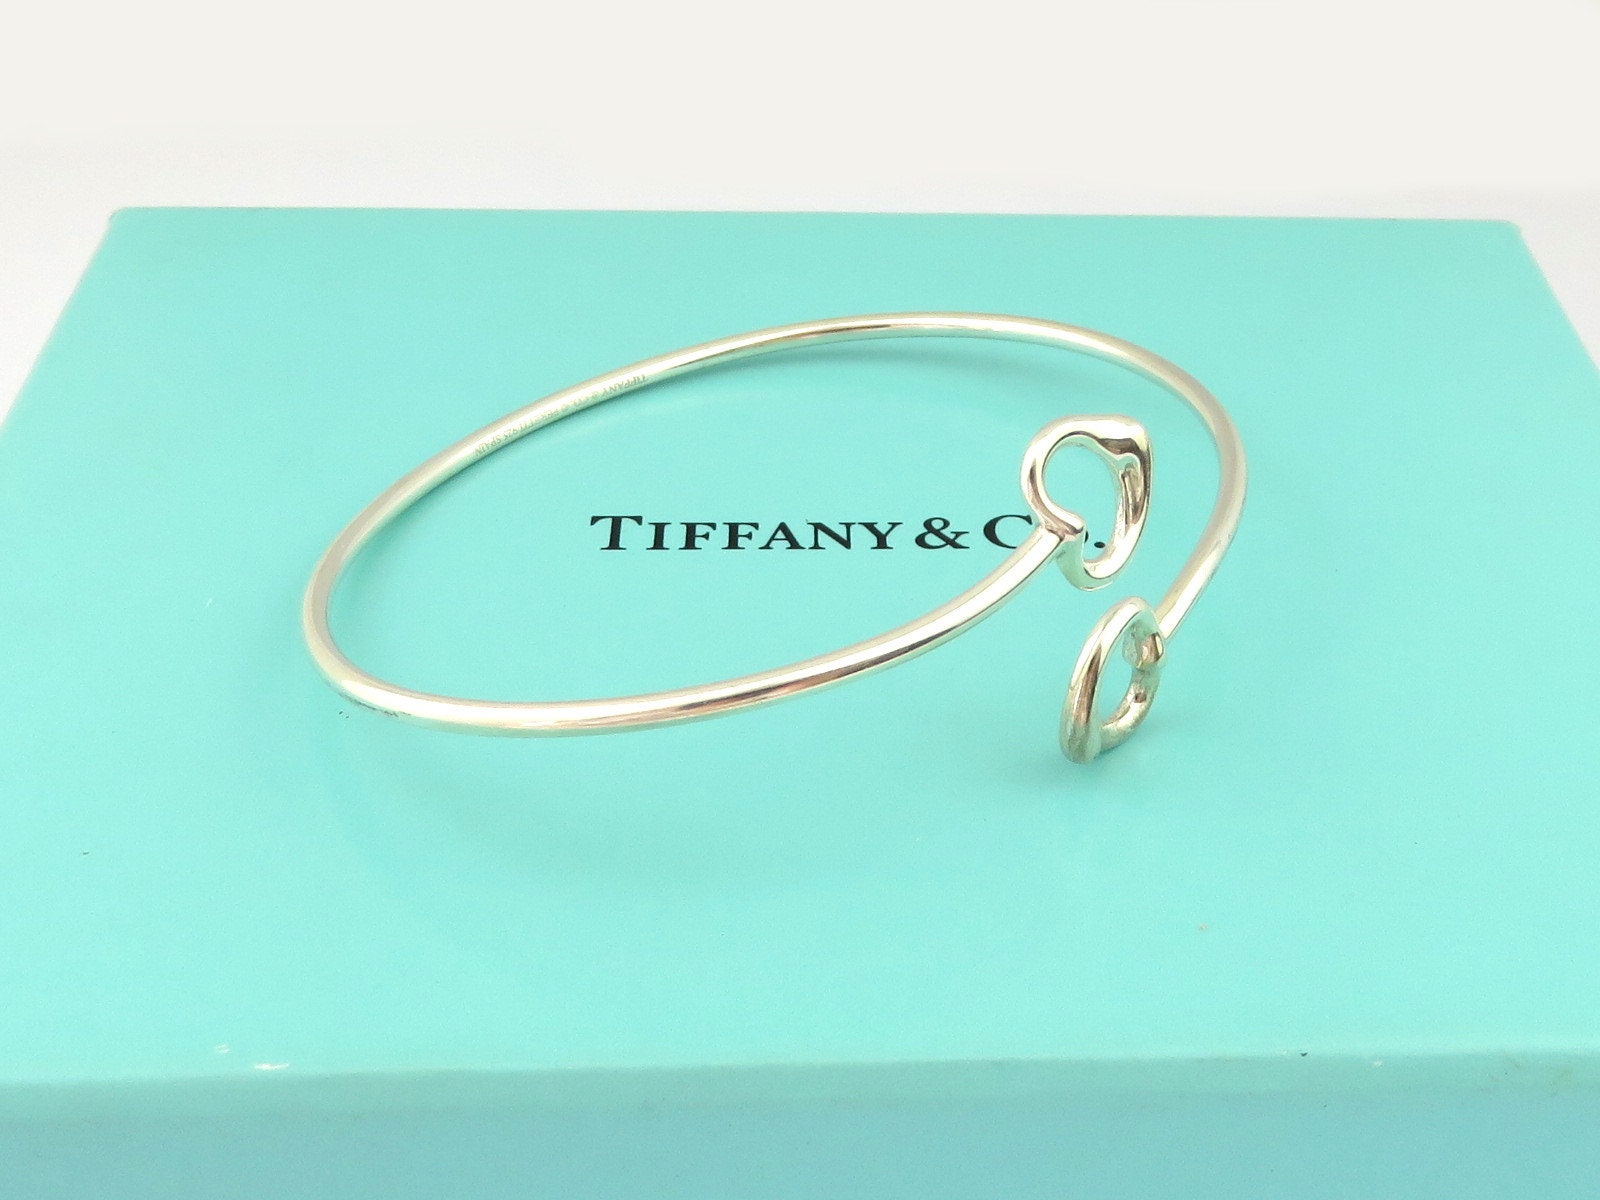 TIFFANY & CO Sterling Silver Double Open Heart Bangle Bracelet | Etsy